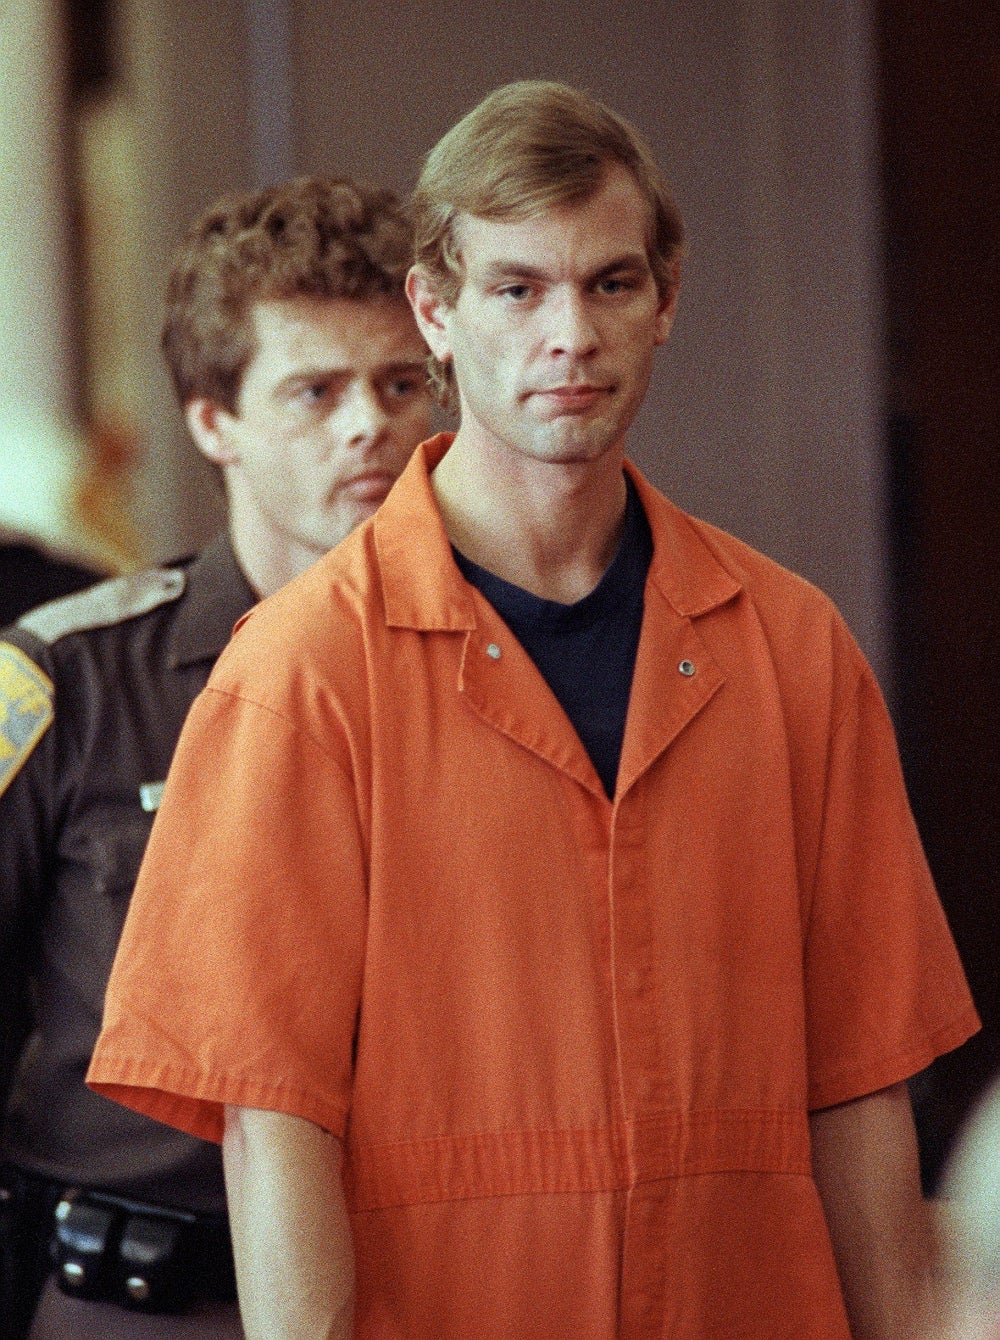 Dahmer in court, 6 August 1991